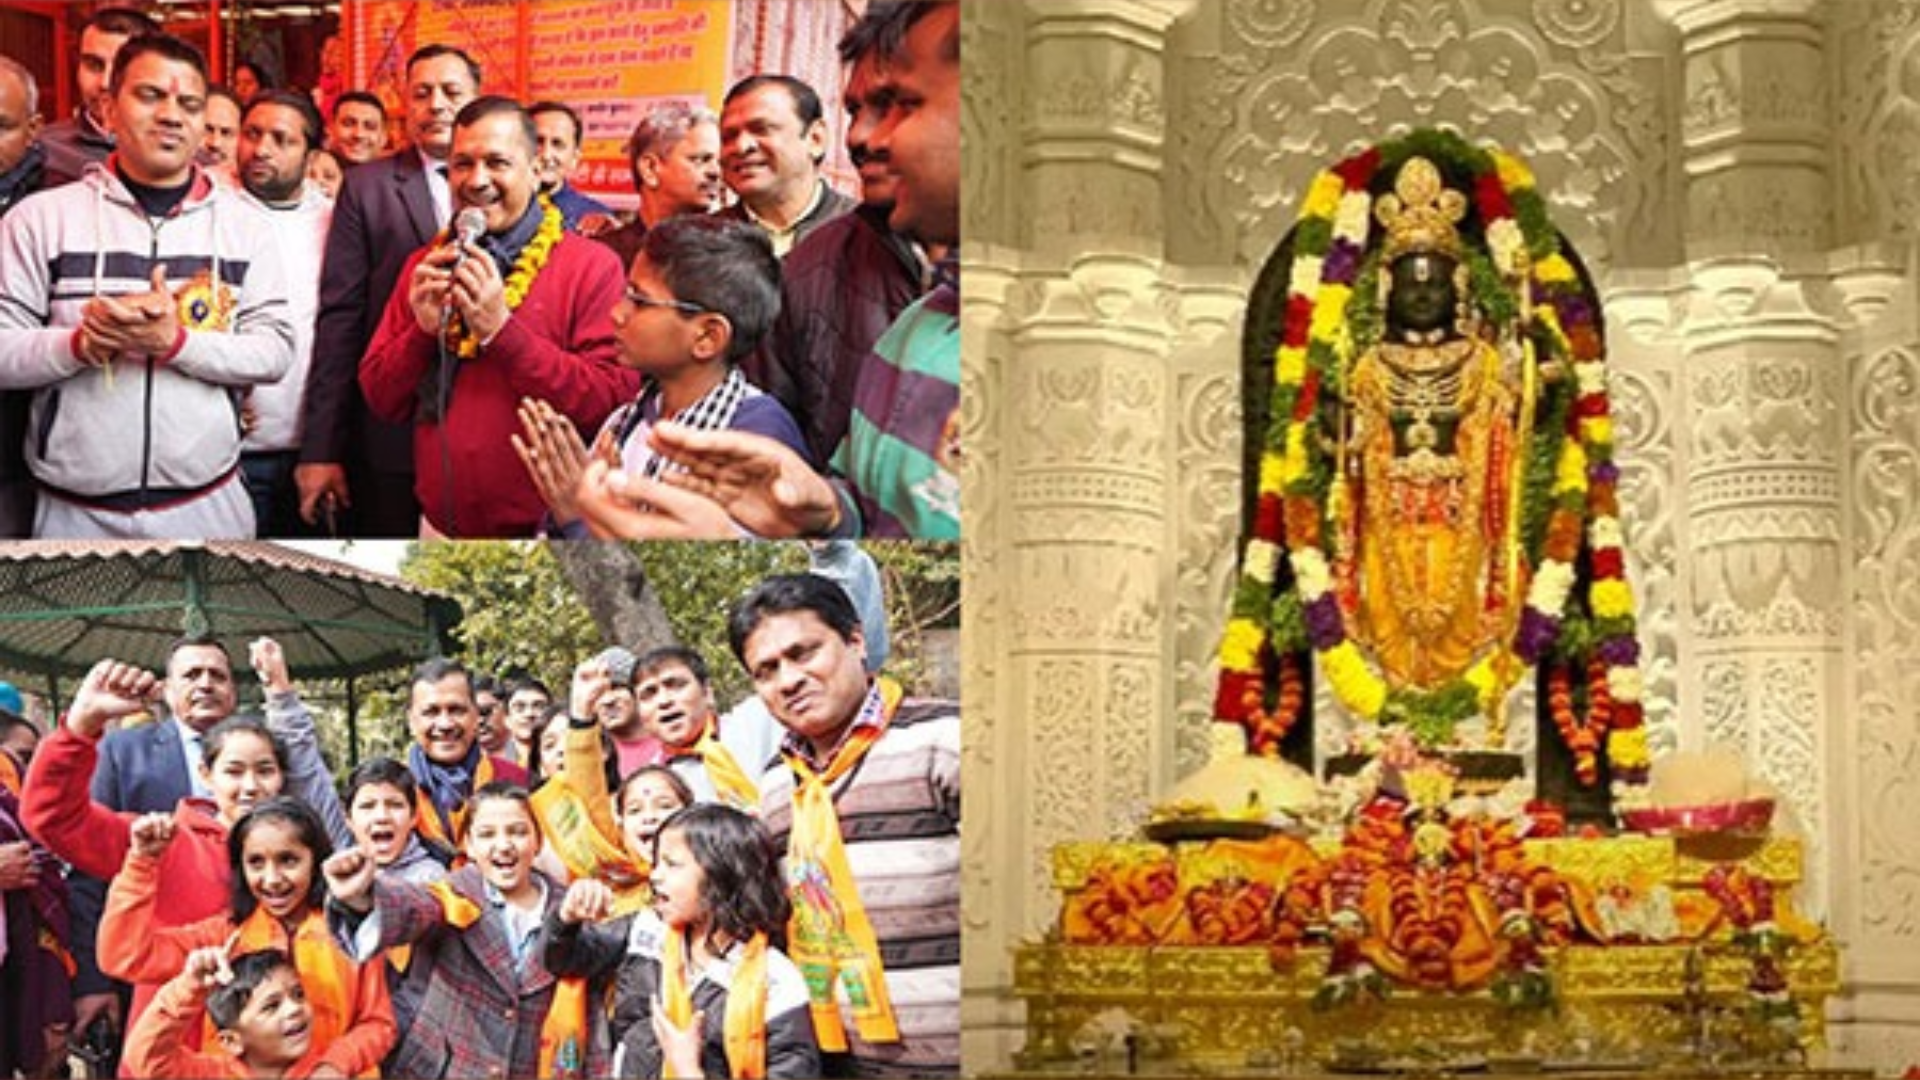 Delhi CM Arvind Kejriwal Joins ‘Bhandaras’ Celebration of Ram Lalla’s ‘Pran Pratistha’